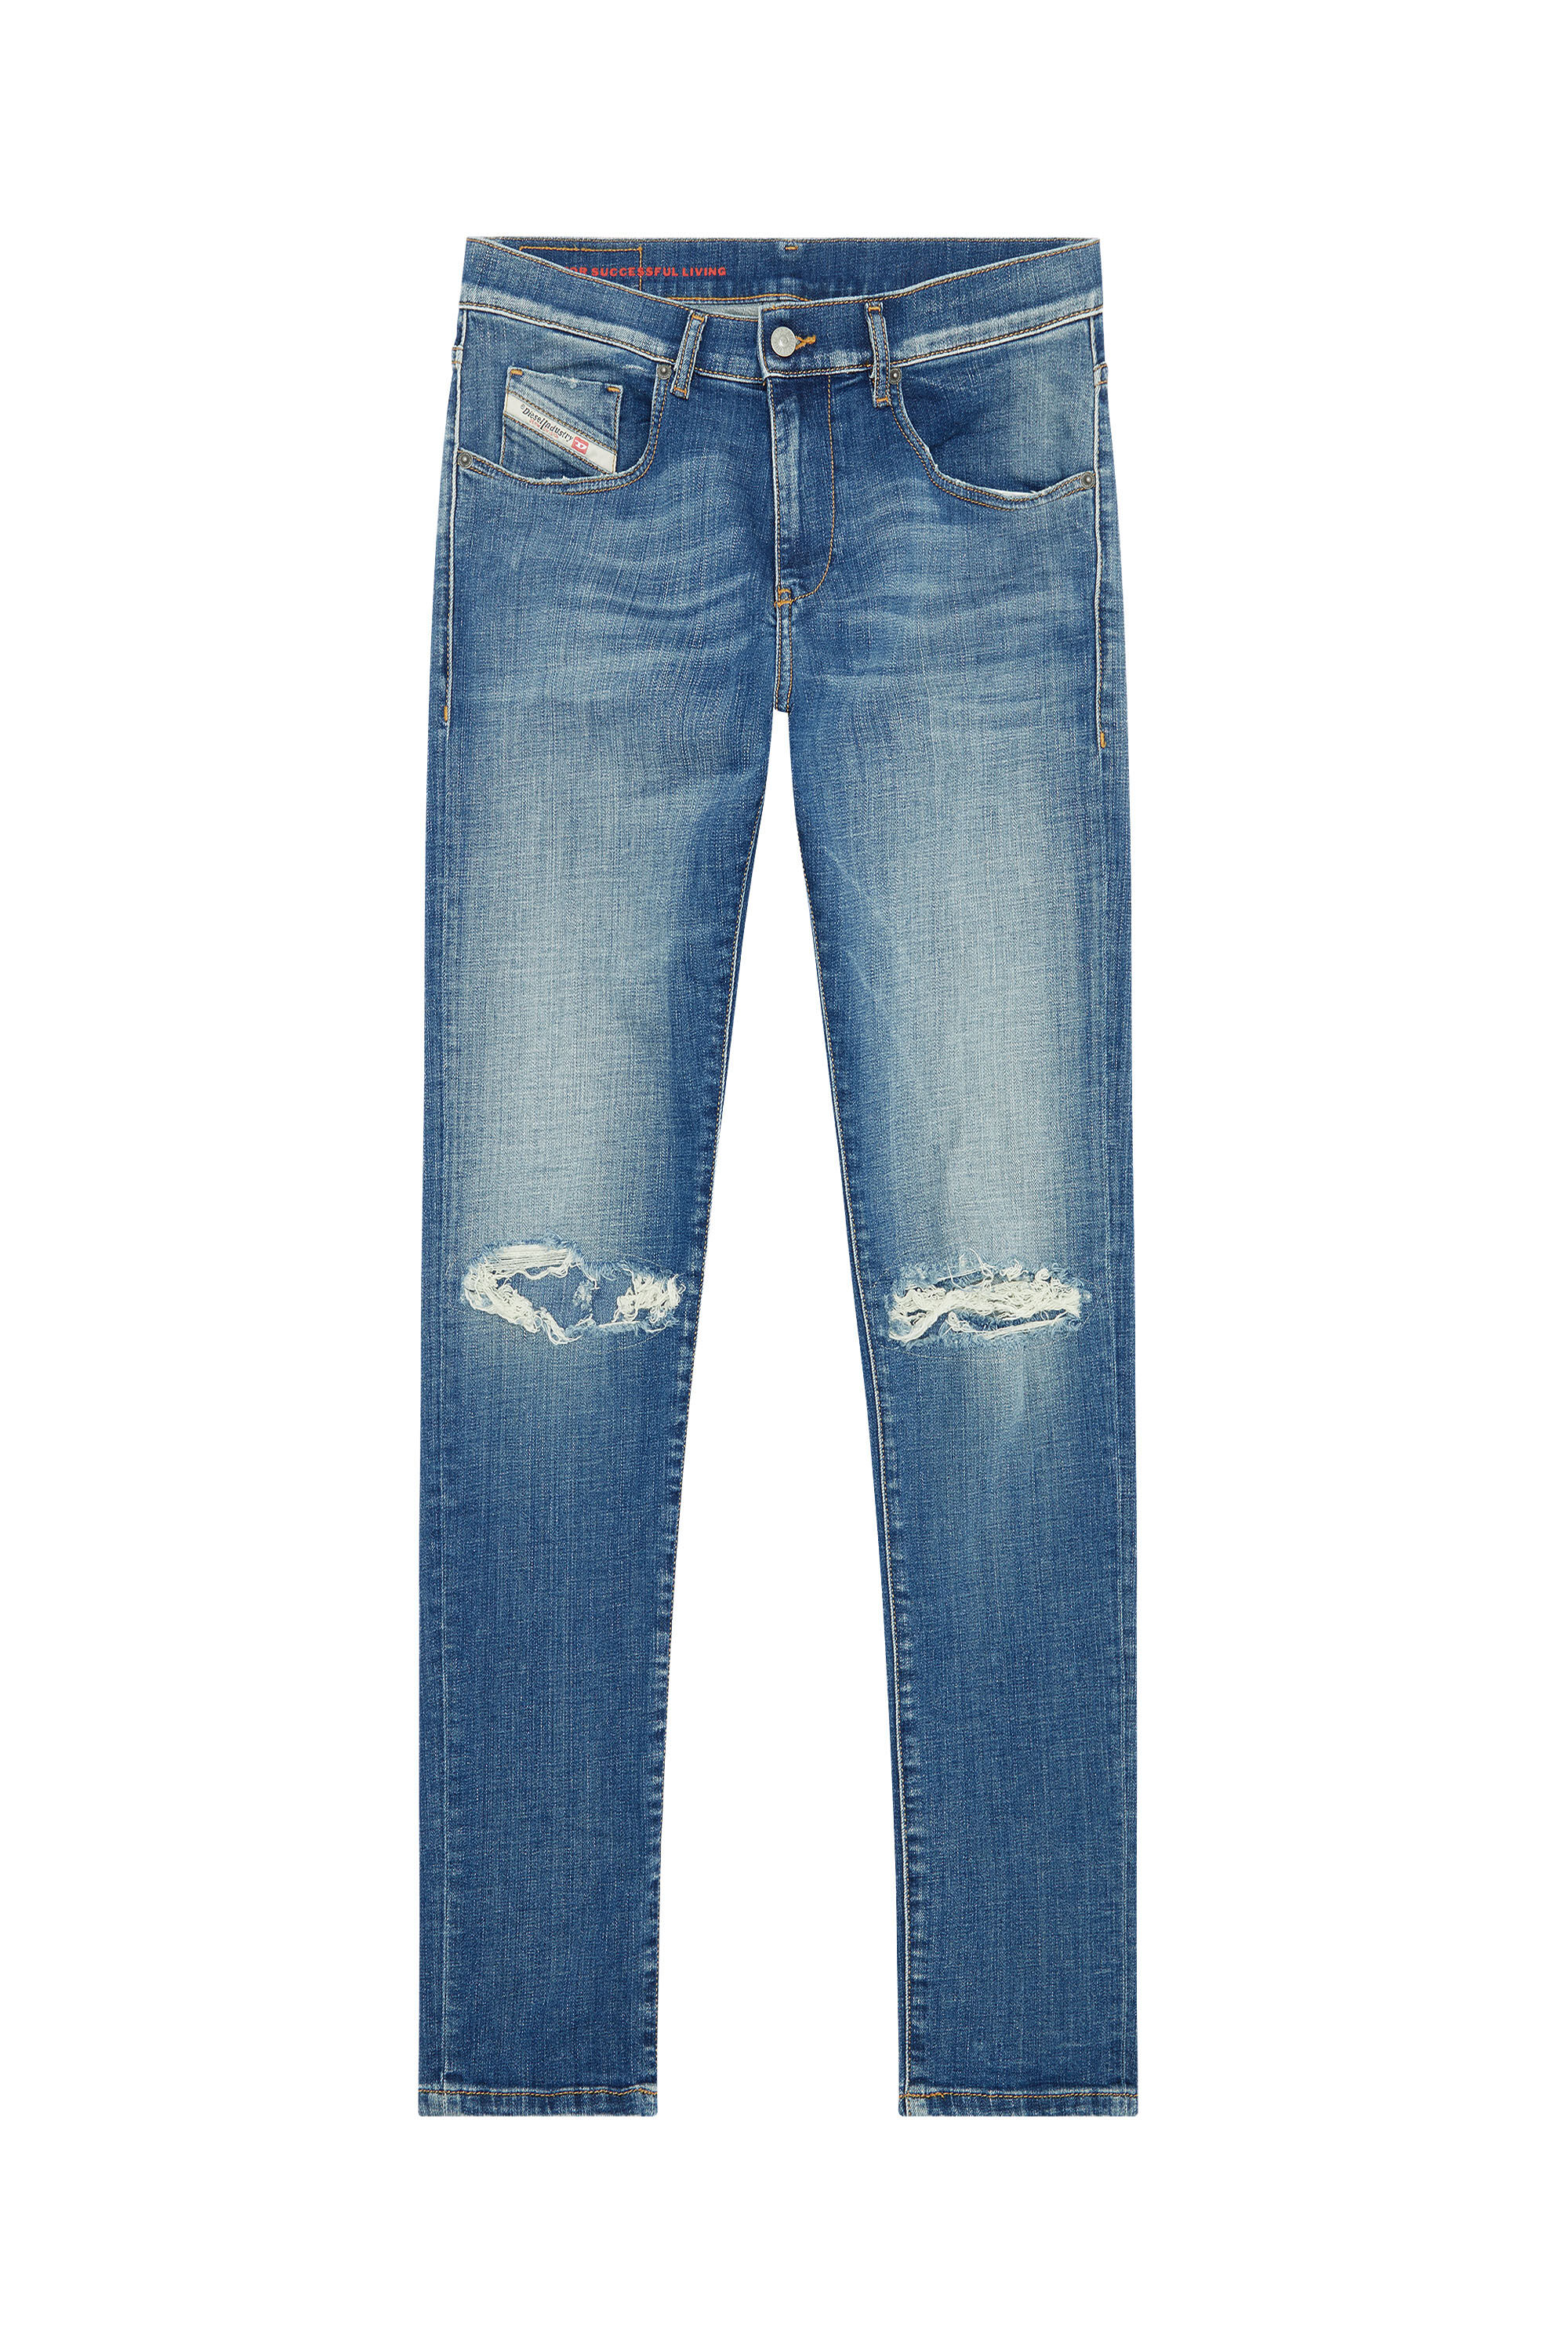 Diesel - Slim Jeans 2019 D-Strukt 09F06,  - Image 2